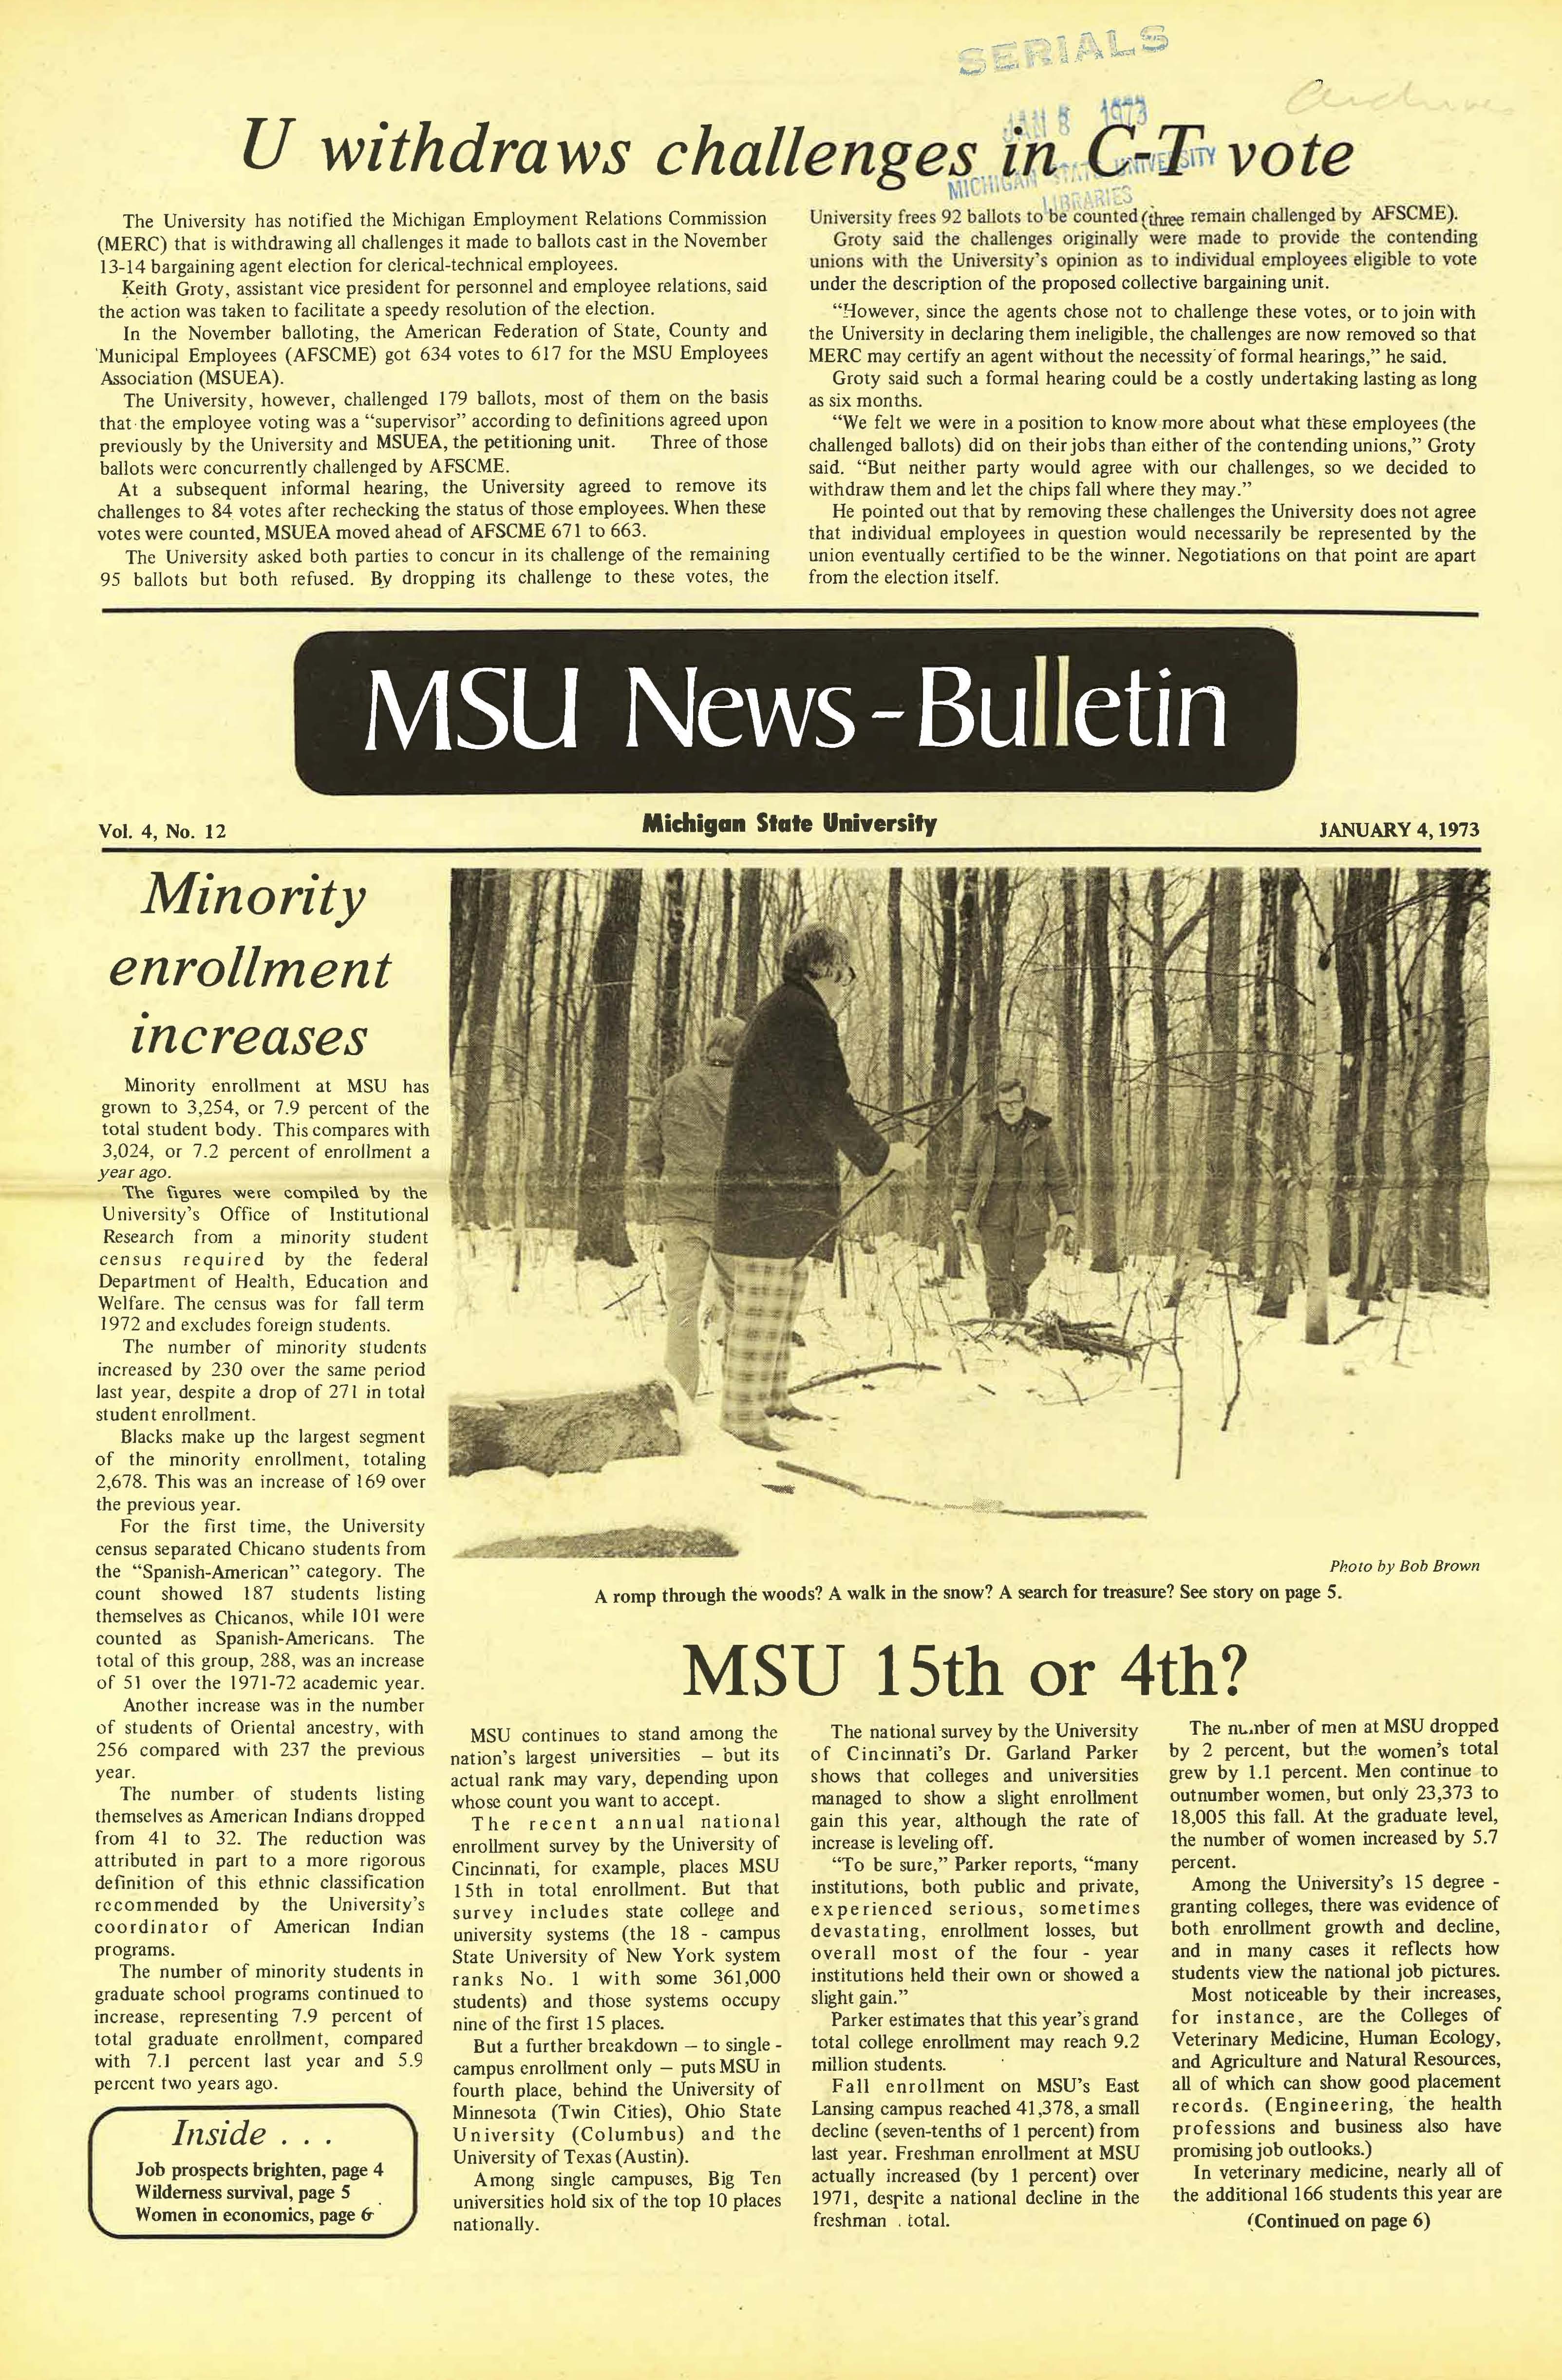 MSU News Bulletin, vol. 4, No. 31, May 31, 1973